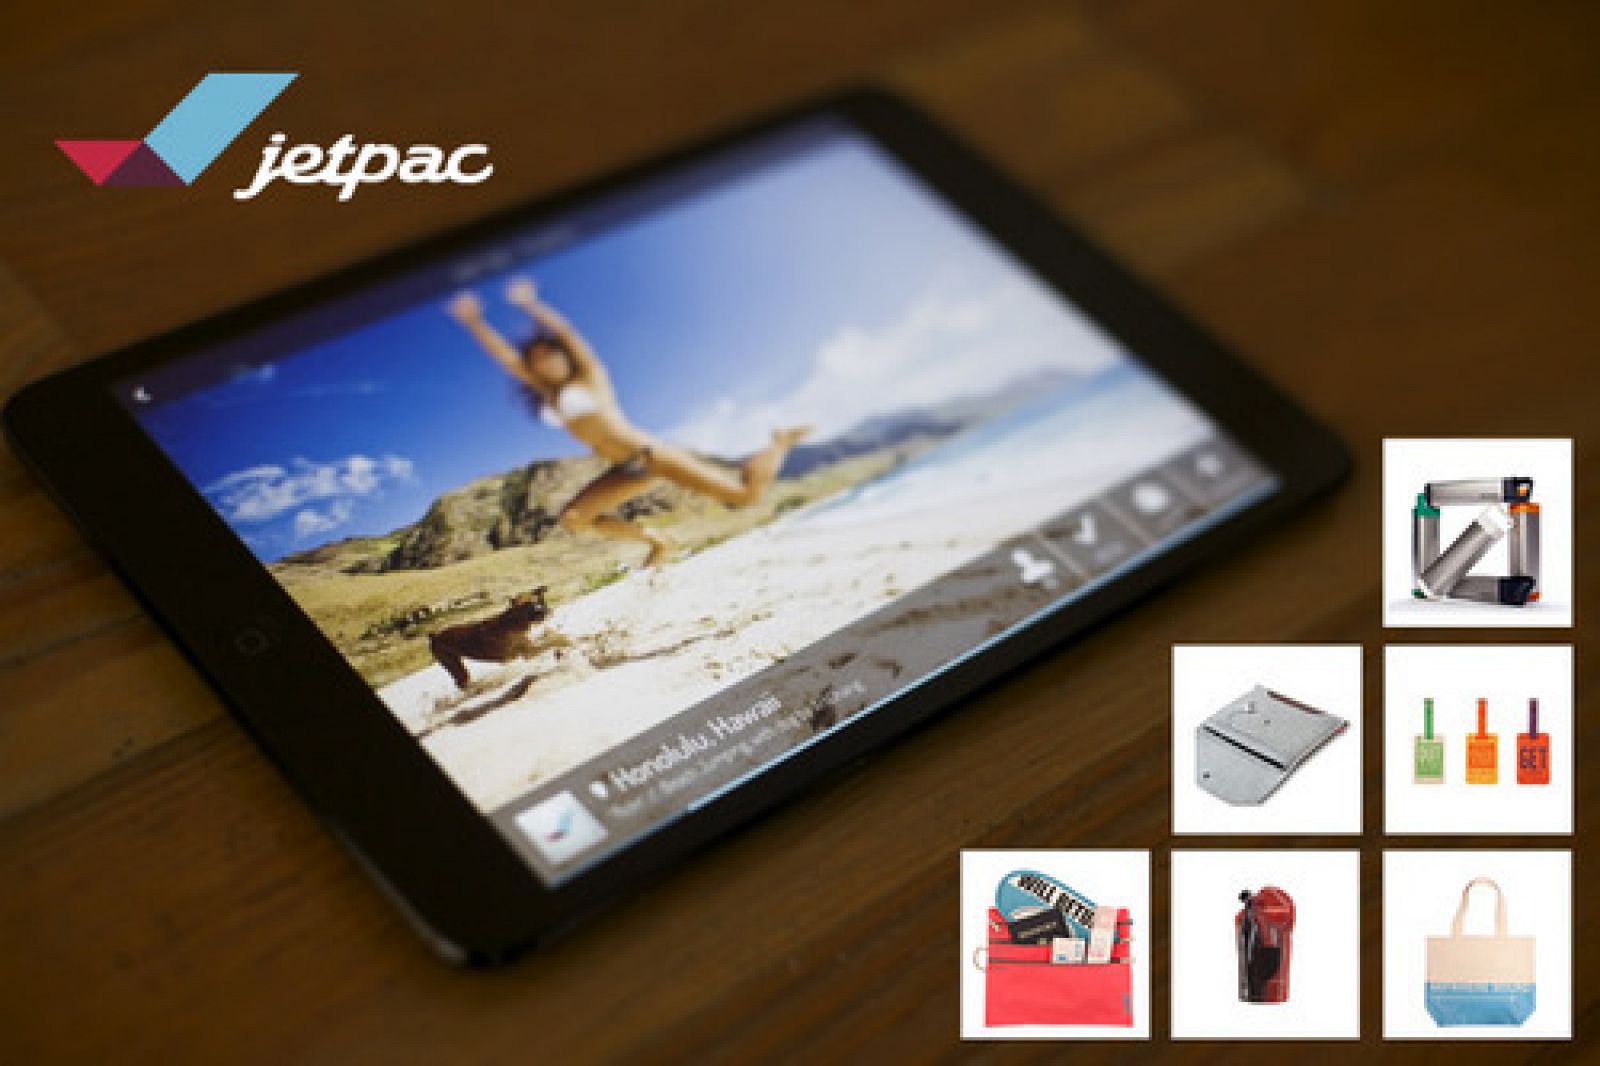 Imagen promocional extraída de la web oficial de la empresa emergente Jetpac